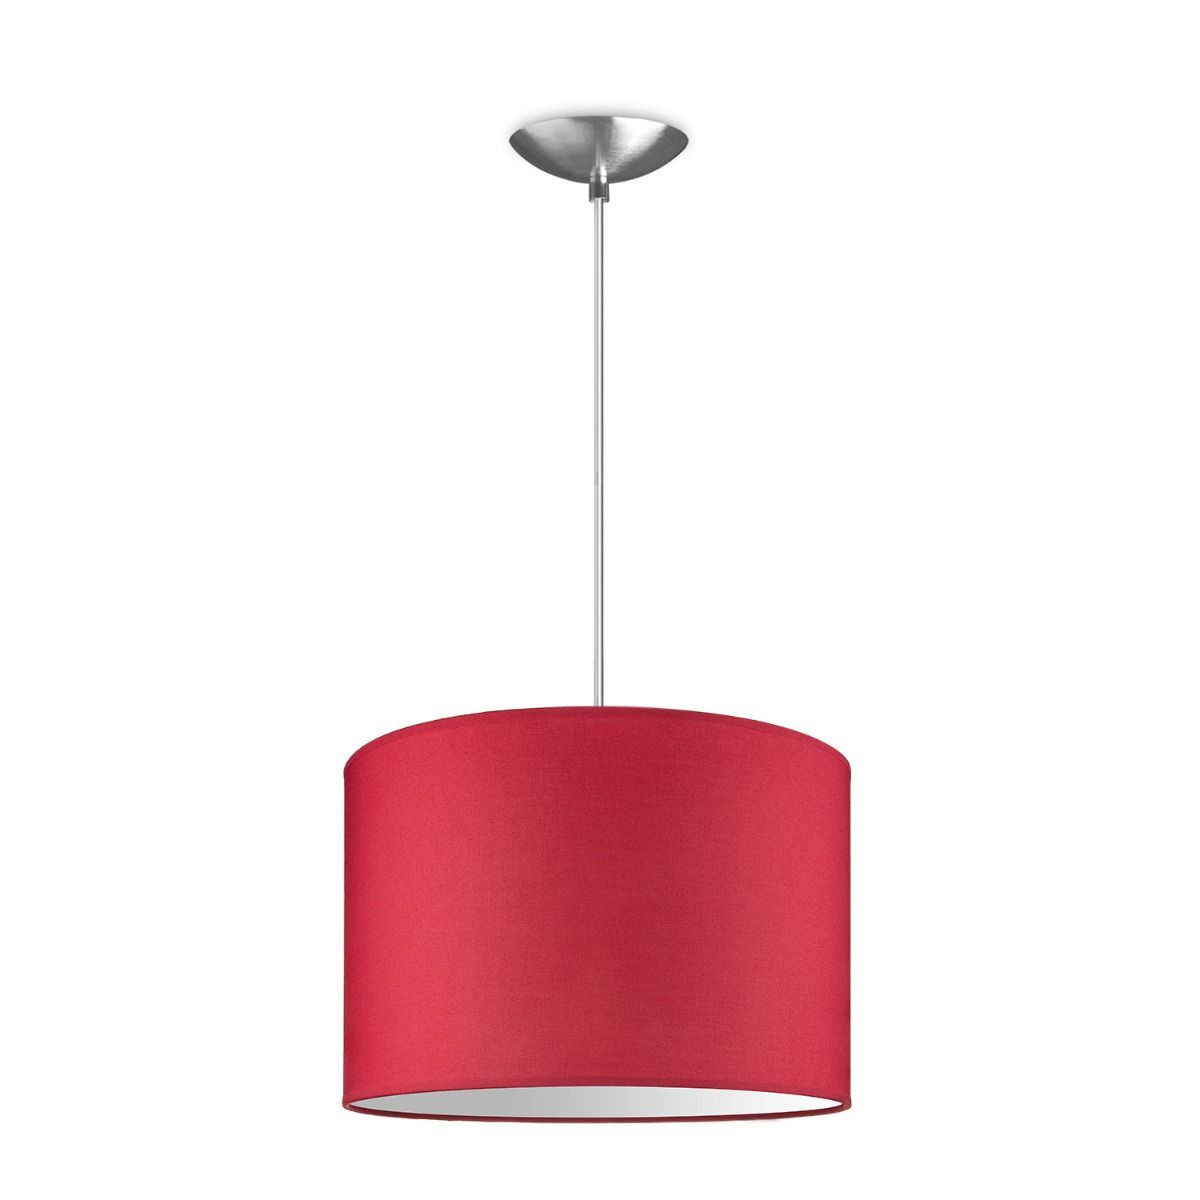 Light depot - hanglamp basic bling Ø 30 cm - rood - Outlet